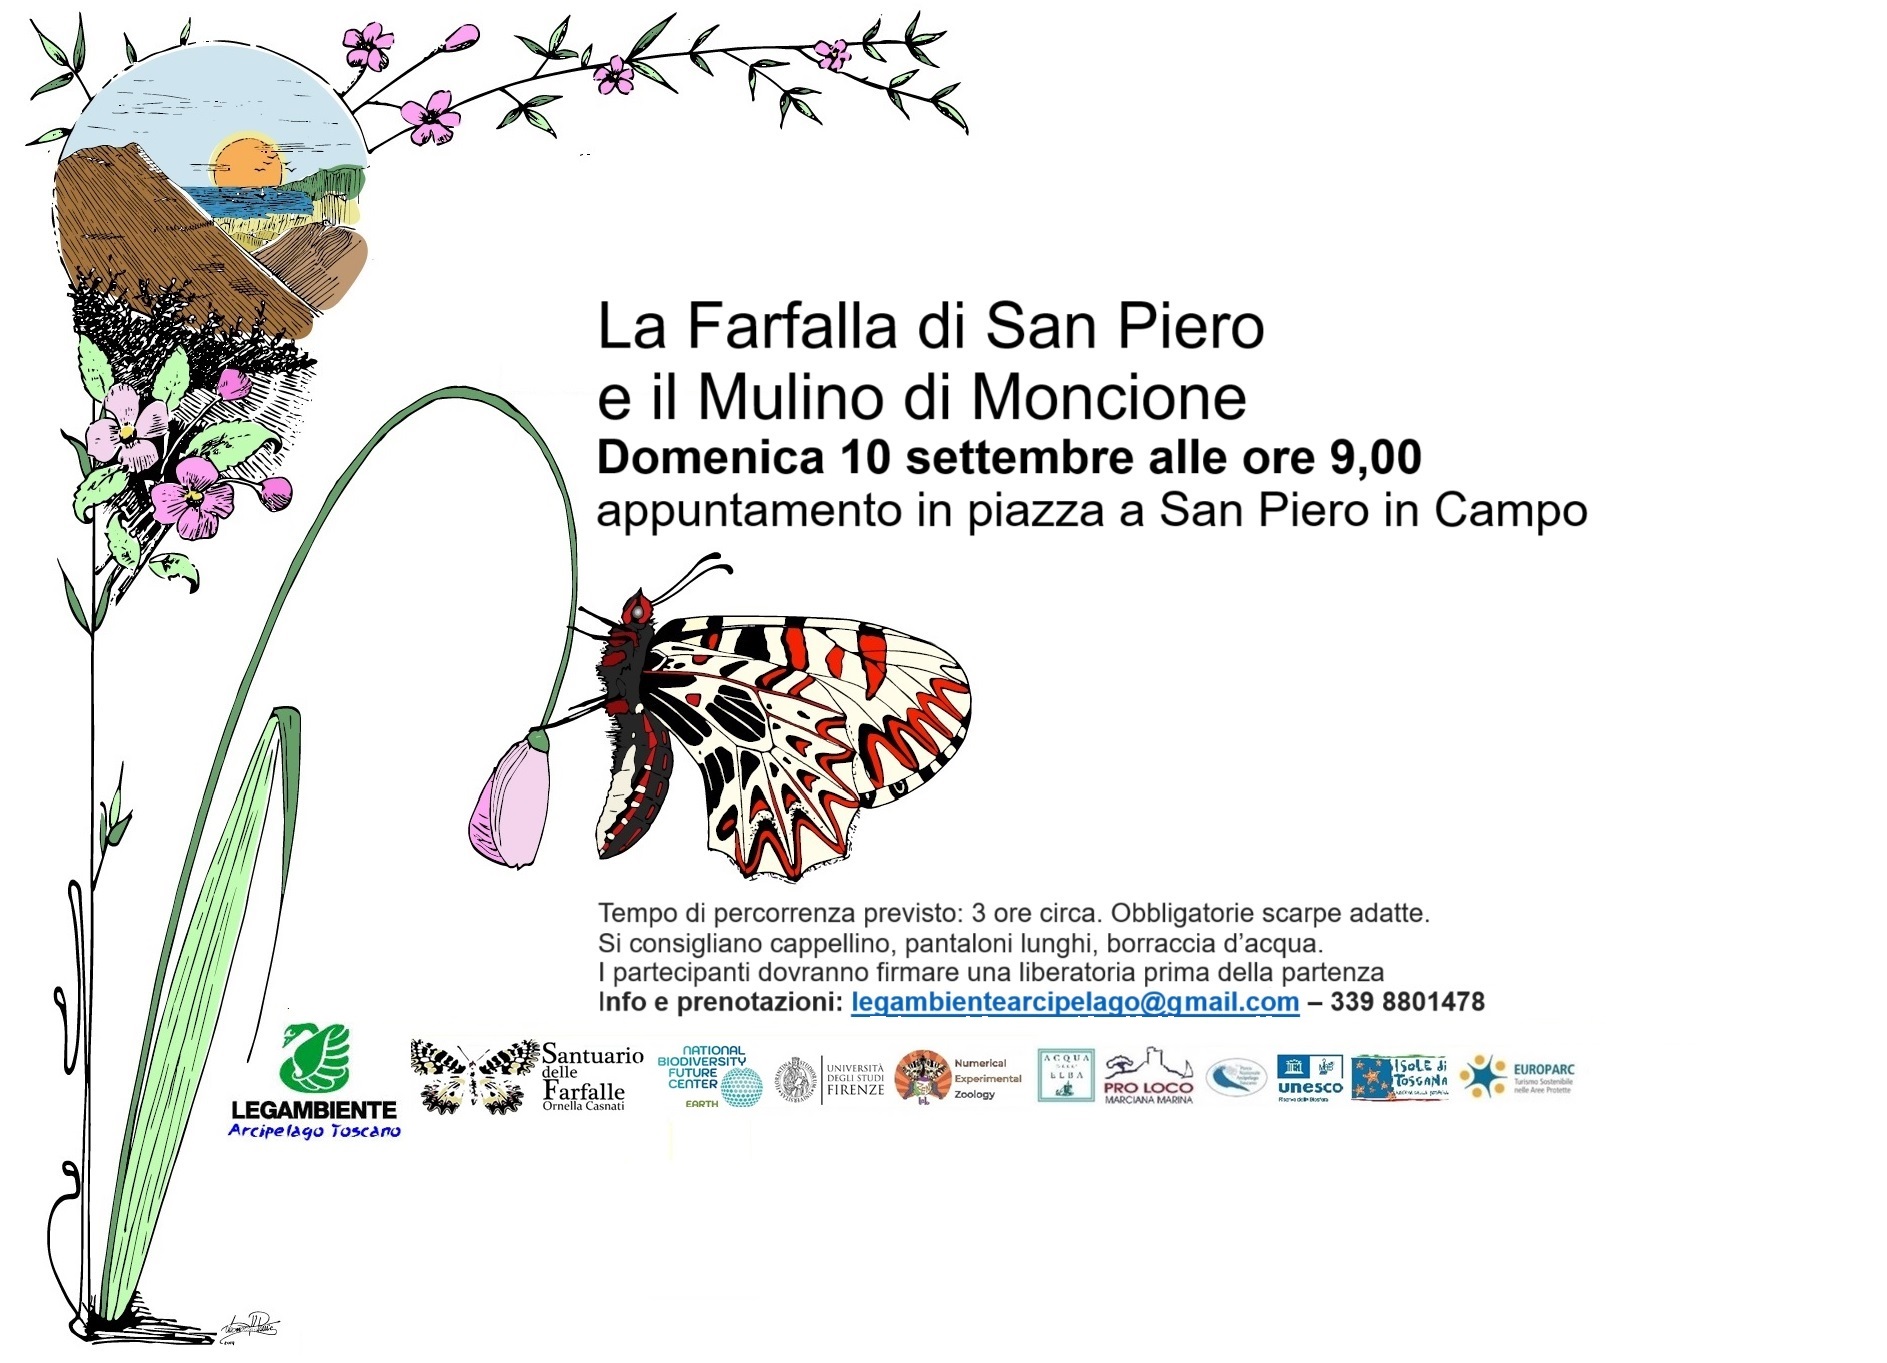 Immagine di una farfalla su uno stelo d'erba, con le informazioni per partecipare.